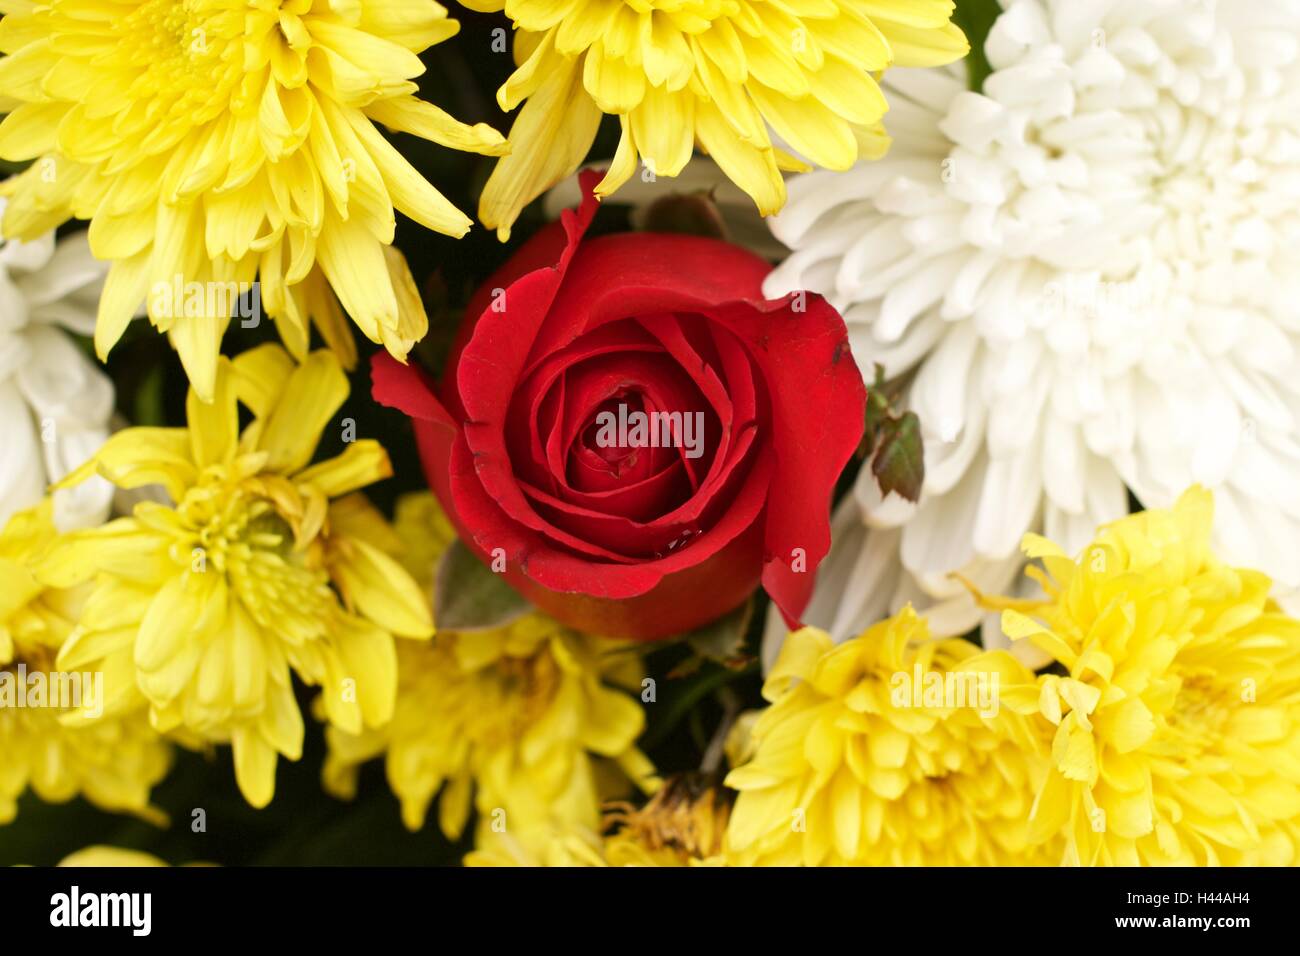 Rote rose gelbe Spinne Chrysantheme und weiße Chrysantheme Blume gemischt Stockfoto